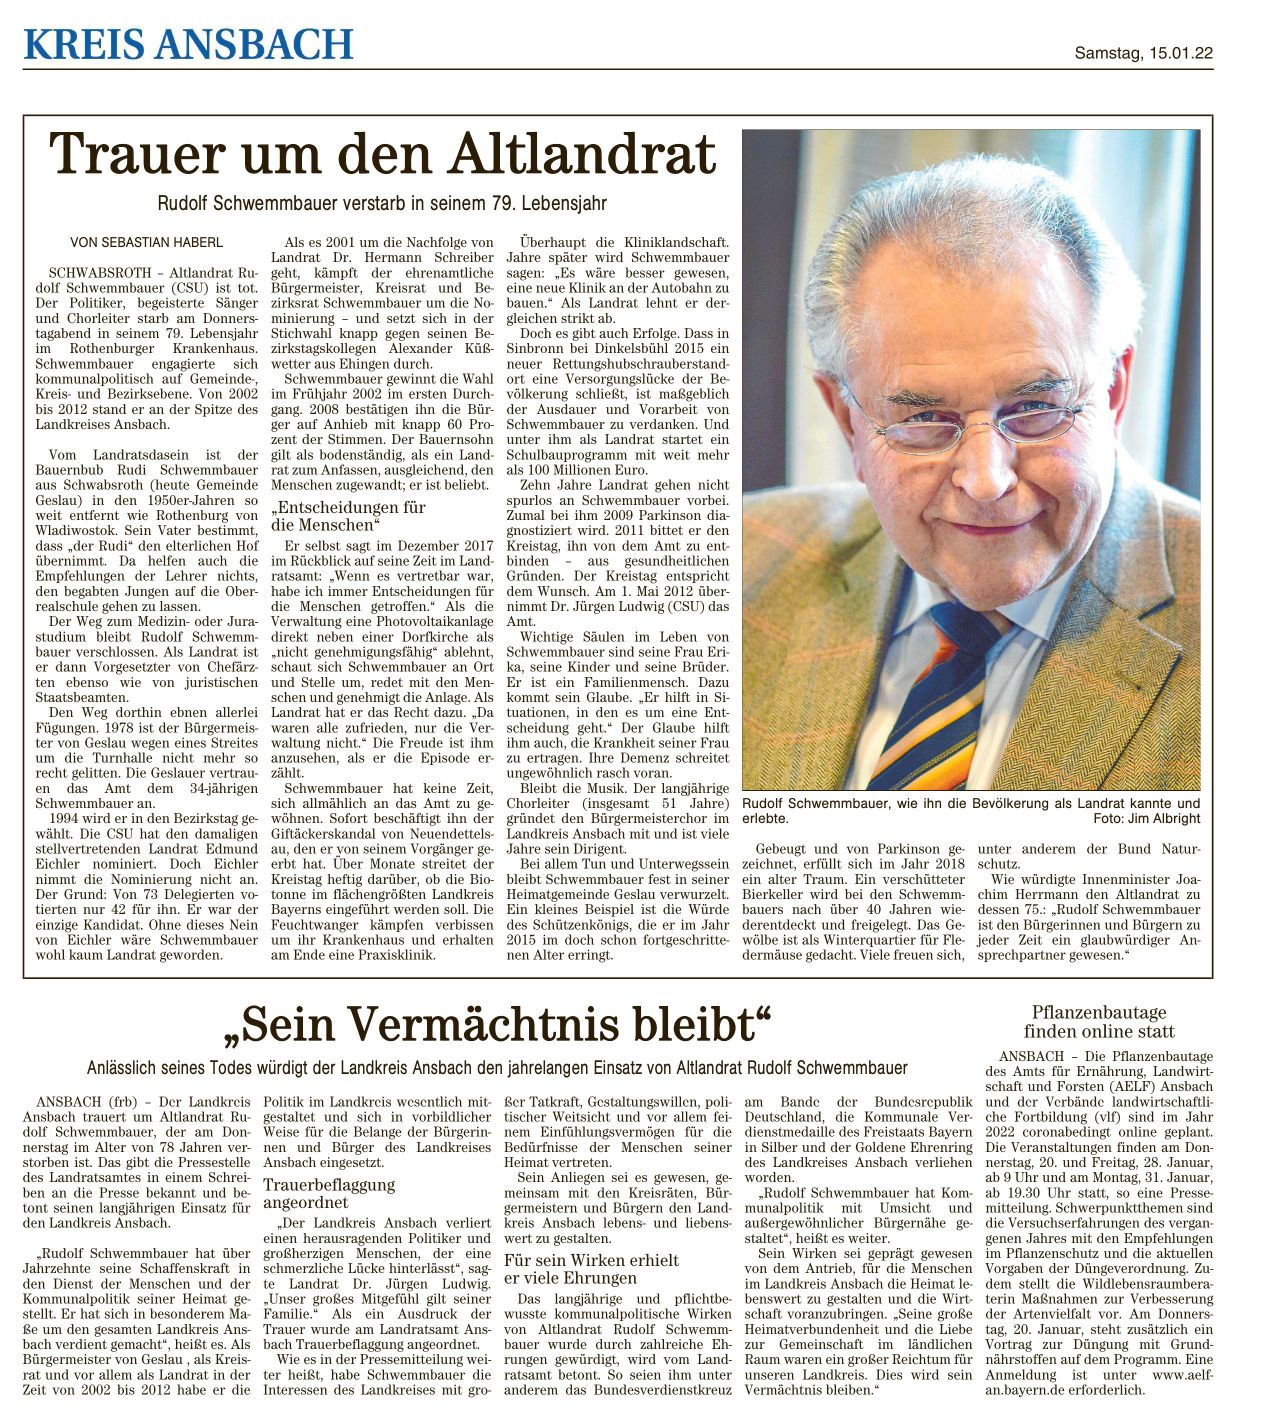  Frnkische Landeszeitung, Samstag, 15.01.2022